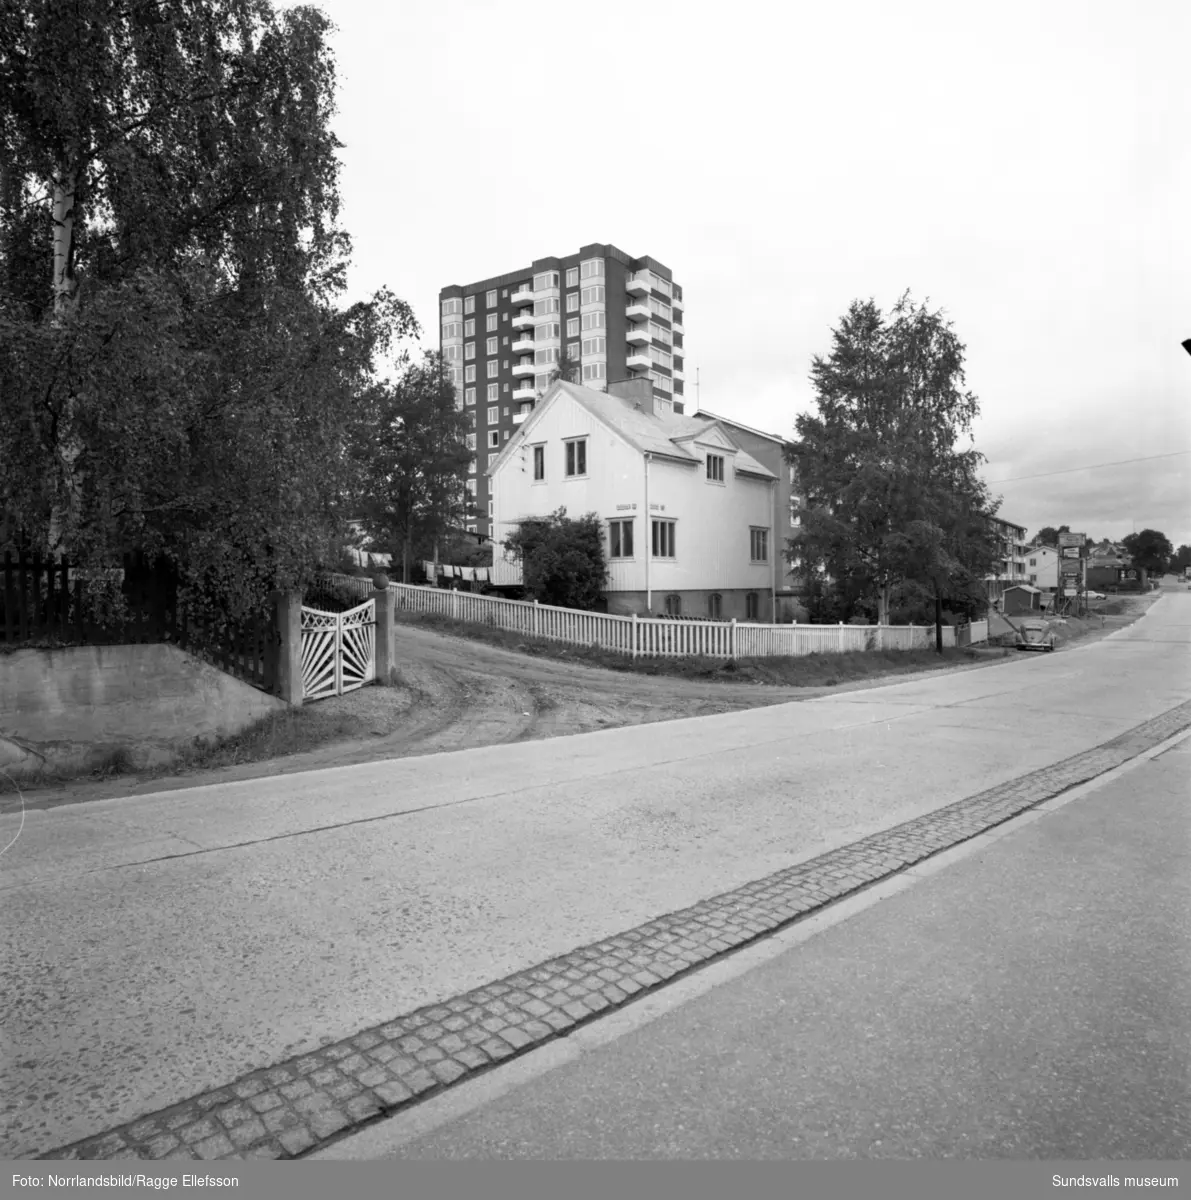 Nya höghuset på Skönsmon, fotograferat från olika håll med omgivande äldre bebyggelse.